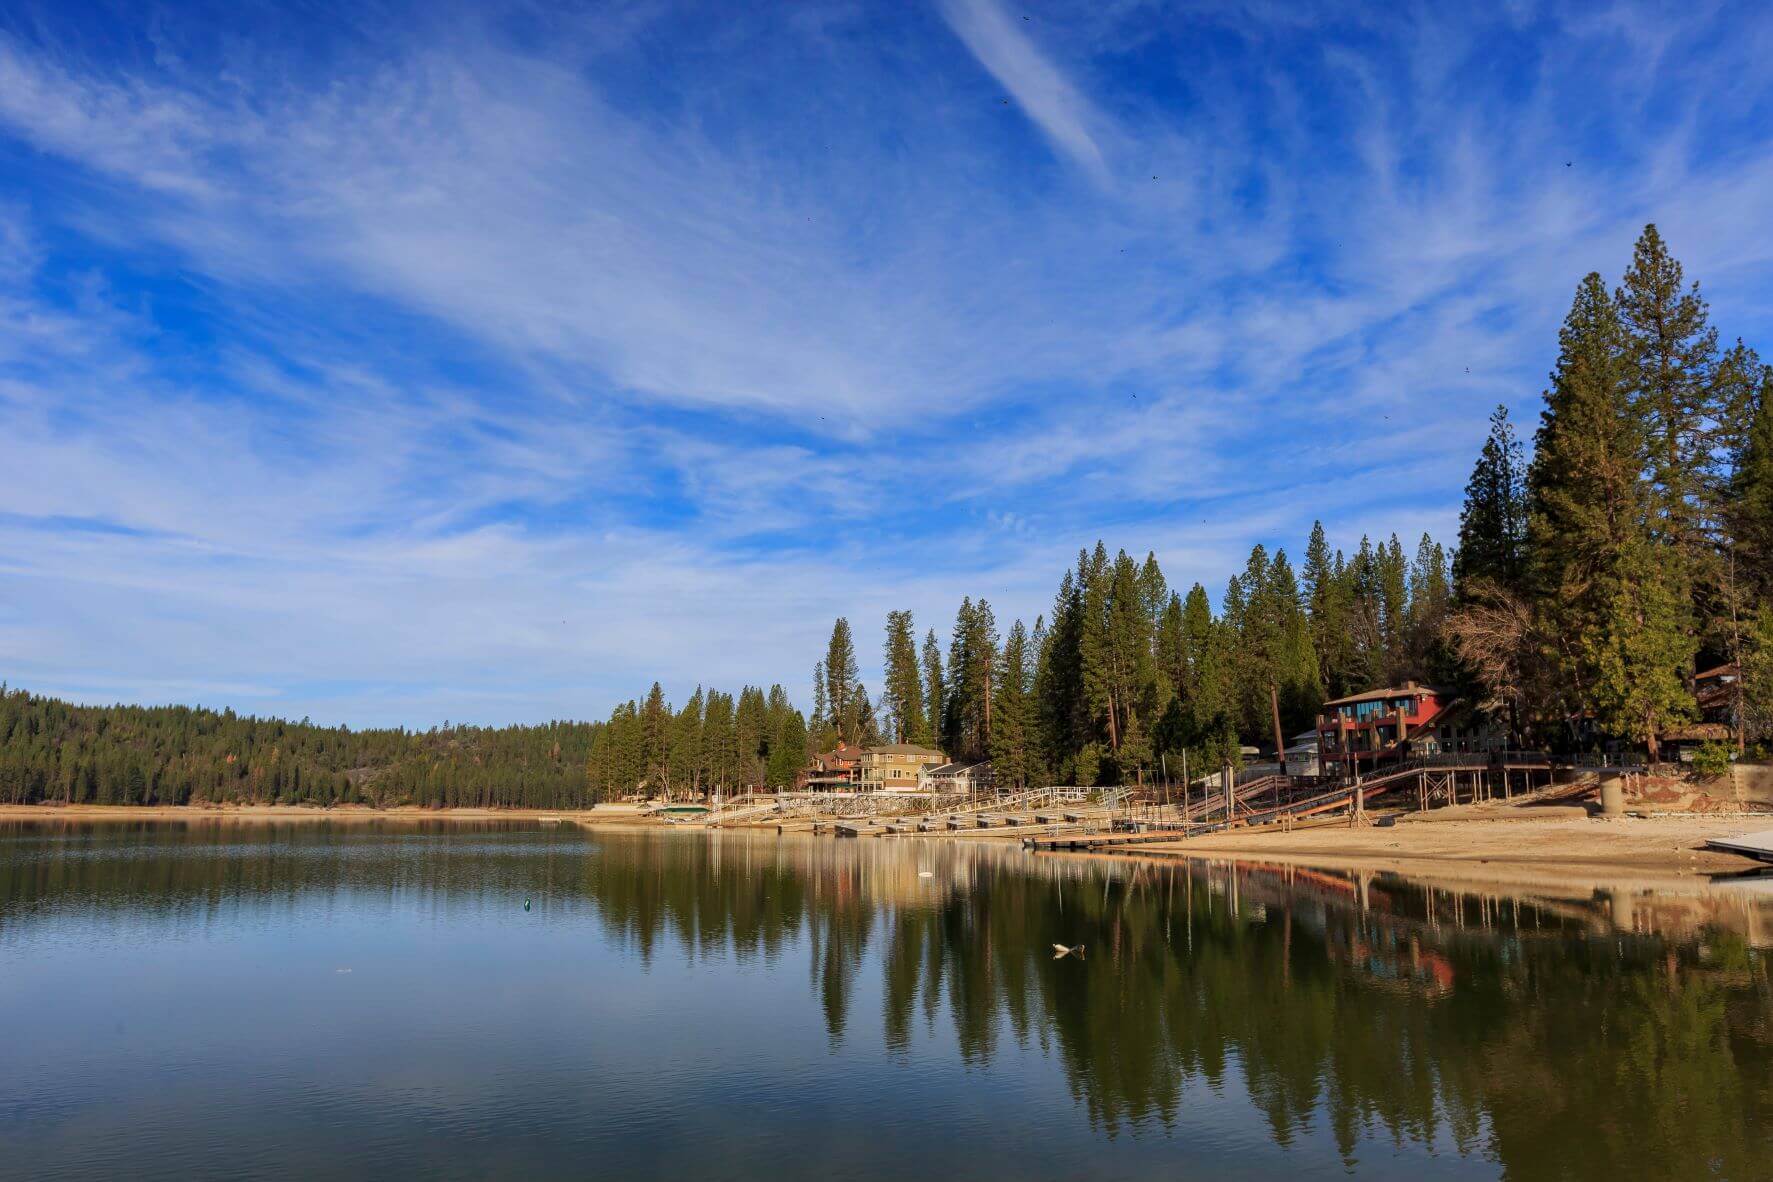 Camping Lakes In California